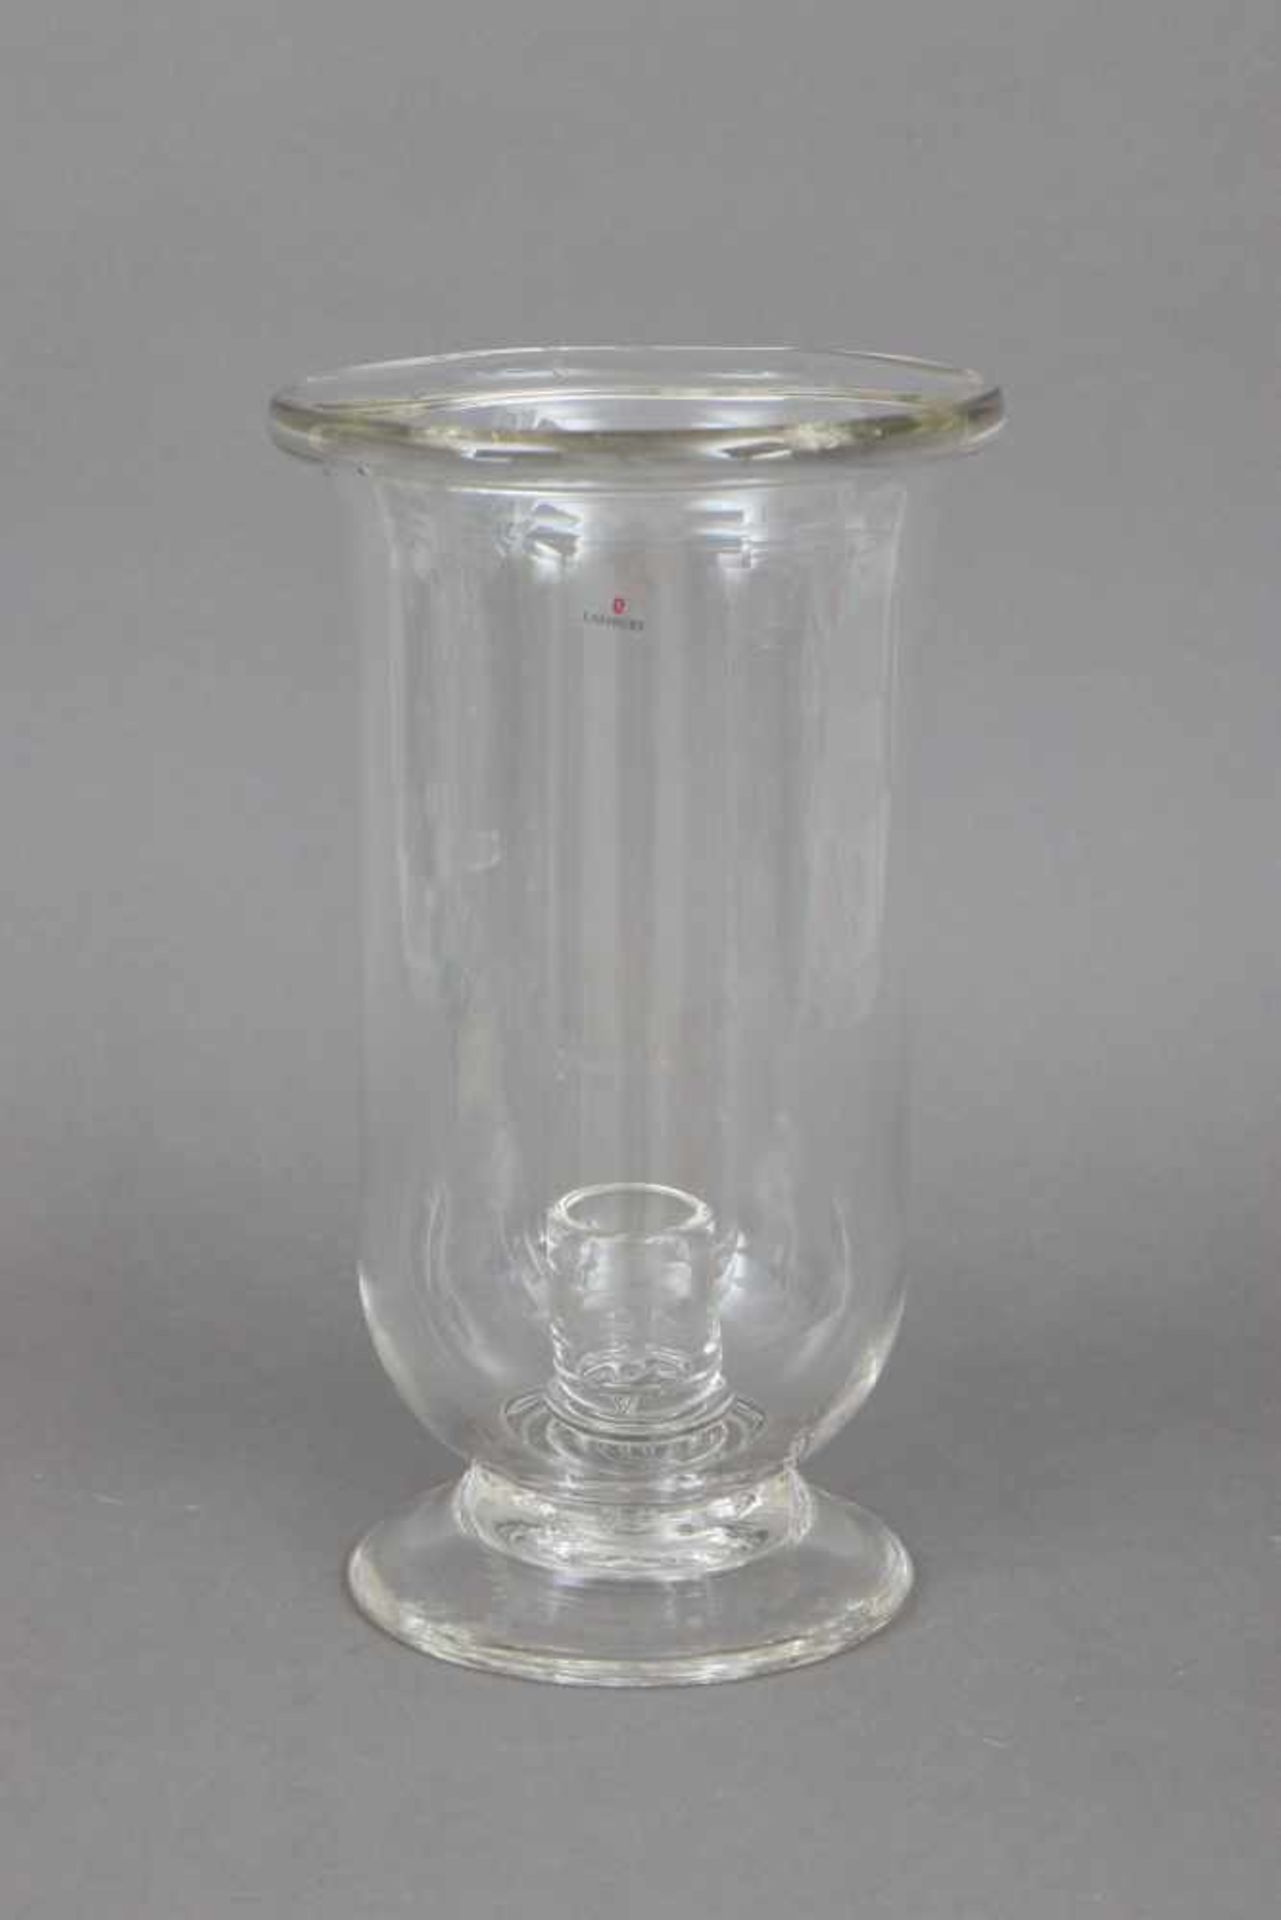 GUNTER LAMBERT Windlicht ¨Veneto¨Kristall-Glas, zylindrischer Korpus auf eingezogenem Rundstand,